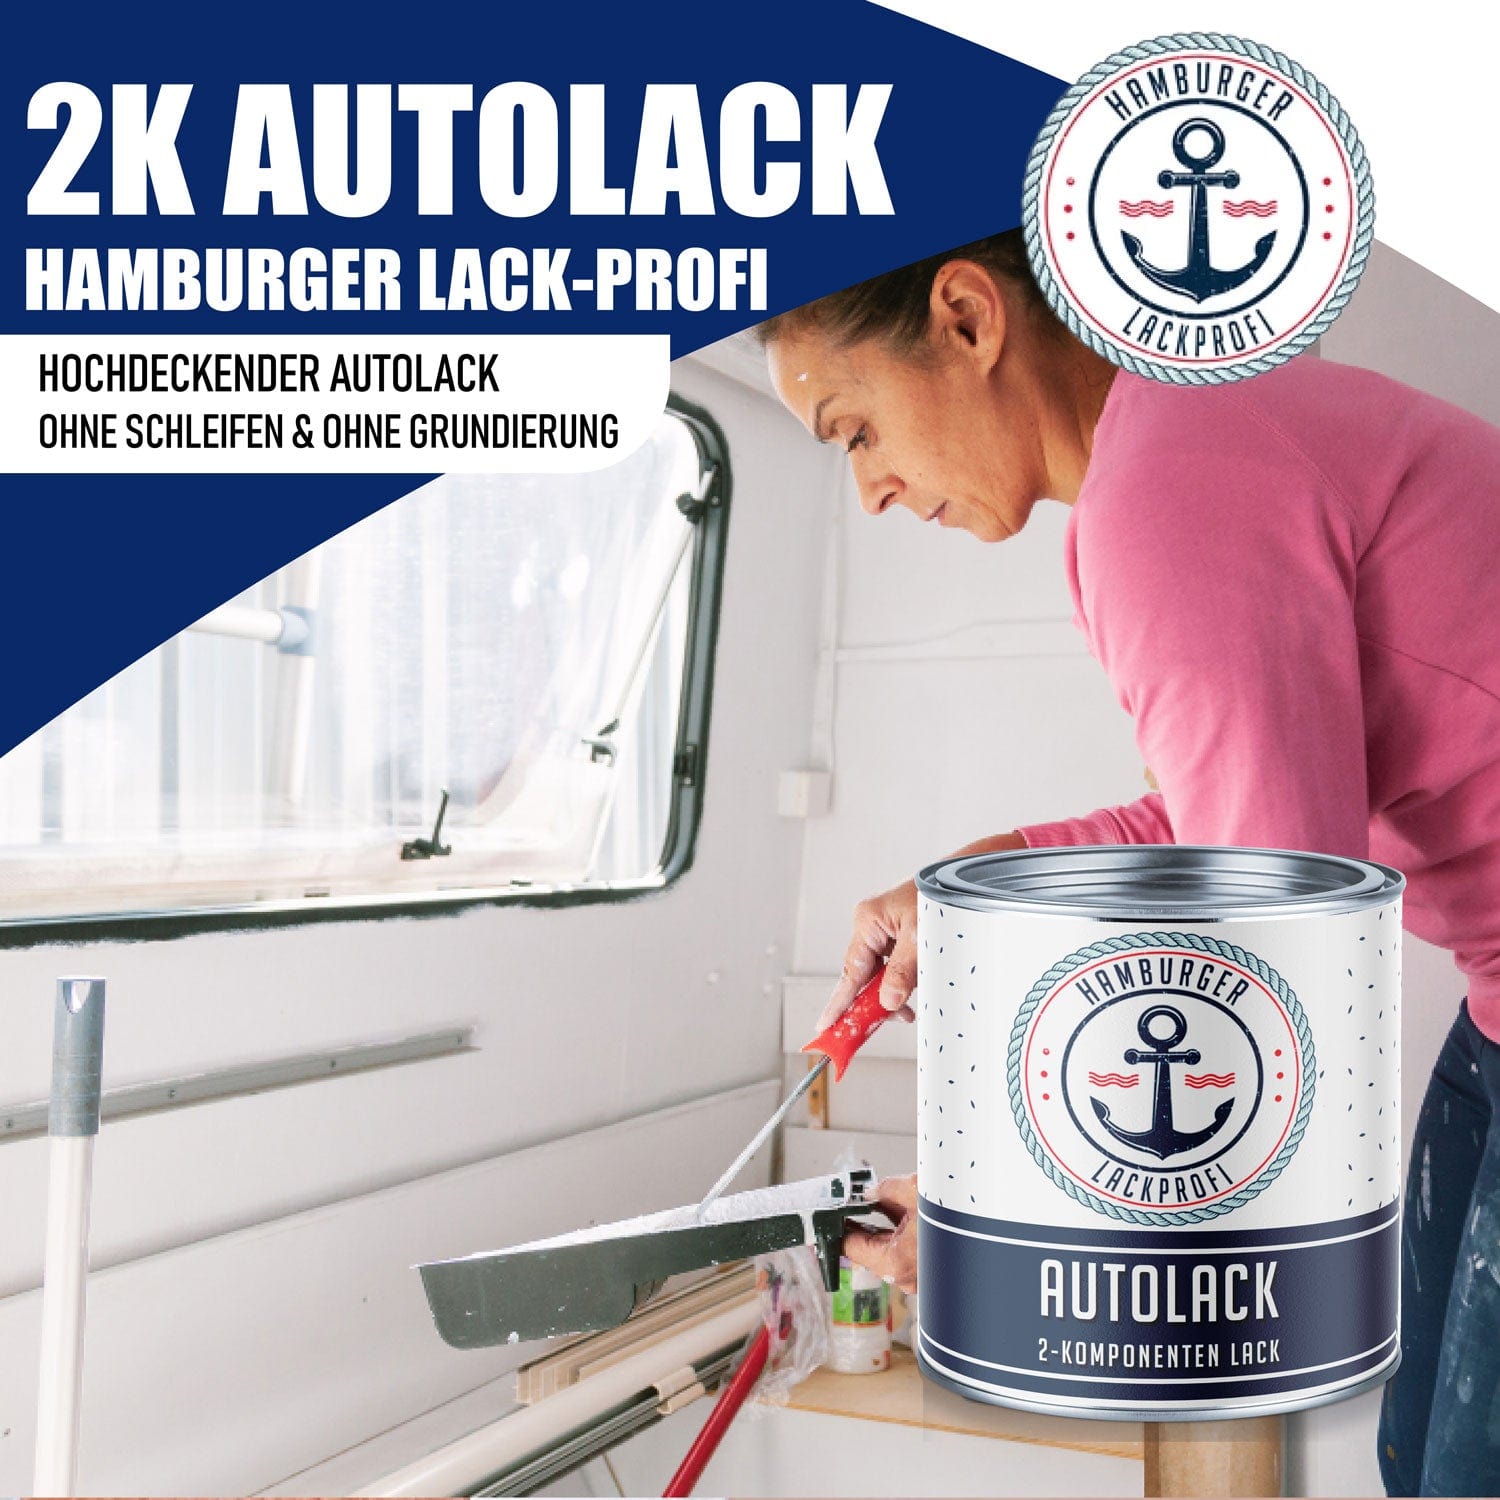 Hamburger Lack-Profi Lacke & Beschichtungen Hamburger Lack-Profi 2K Autolack in Reinorange RAL 2004 mit Lackierset (X300) & Verdünnung (1 L) - 30% Sparangebot